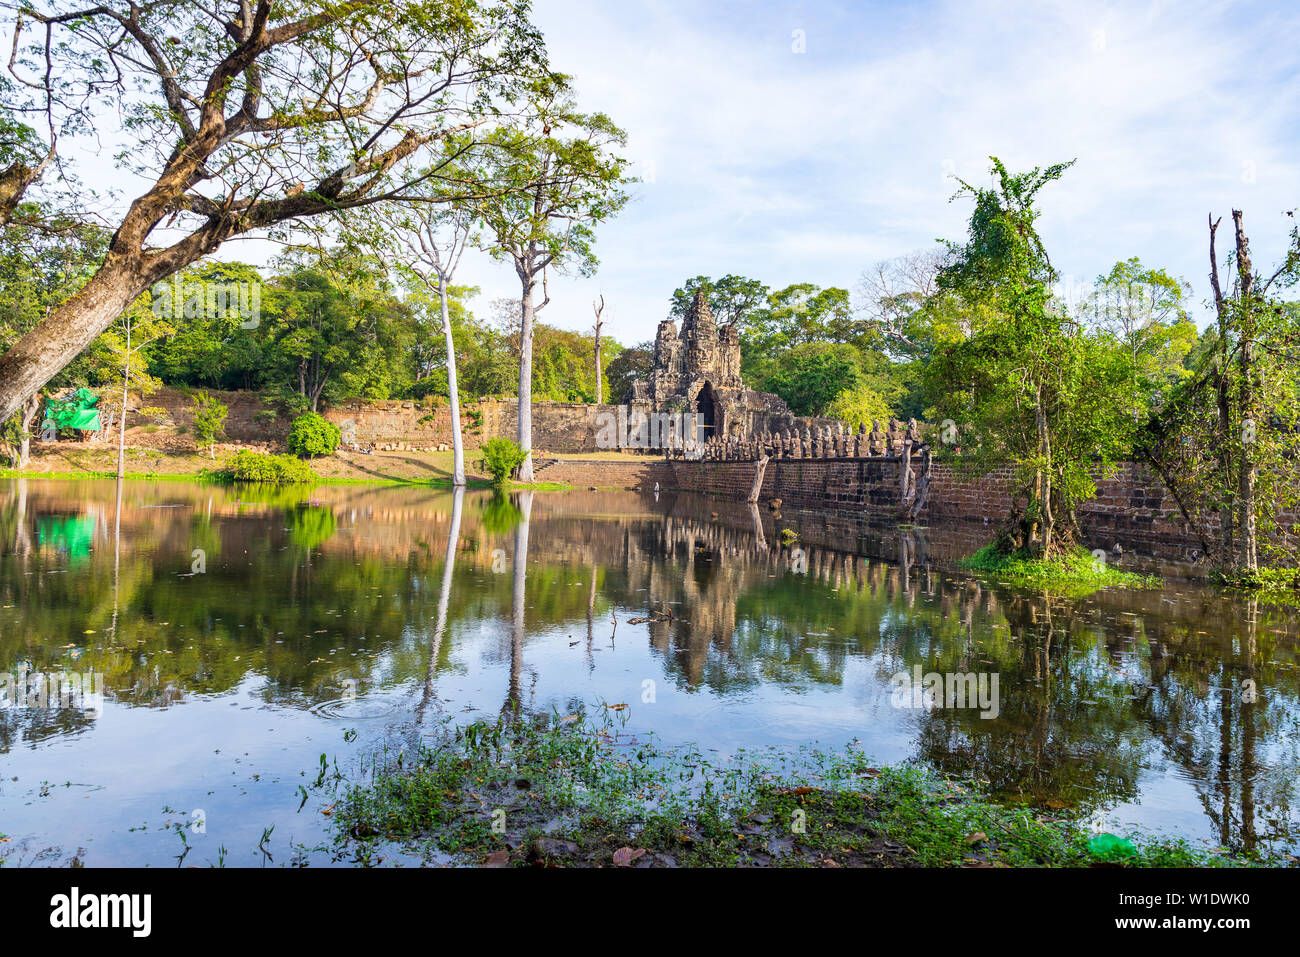 Bayon, Angkor Thom Tempel, weltberühmten Reiseziel, Kambodscha Tourismus. Details der steinernen Gesichter Skulptur und Felszeichnungen. Buddhismus meditation Stockfoto